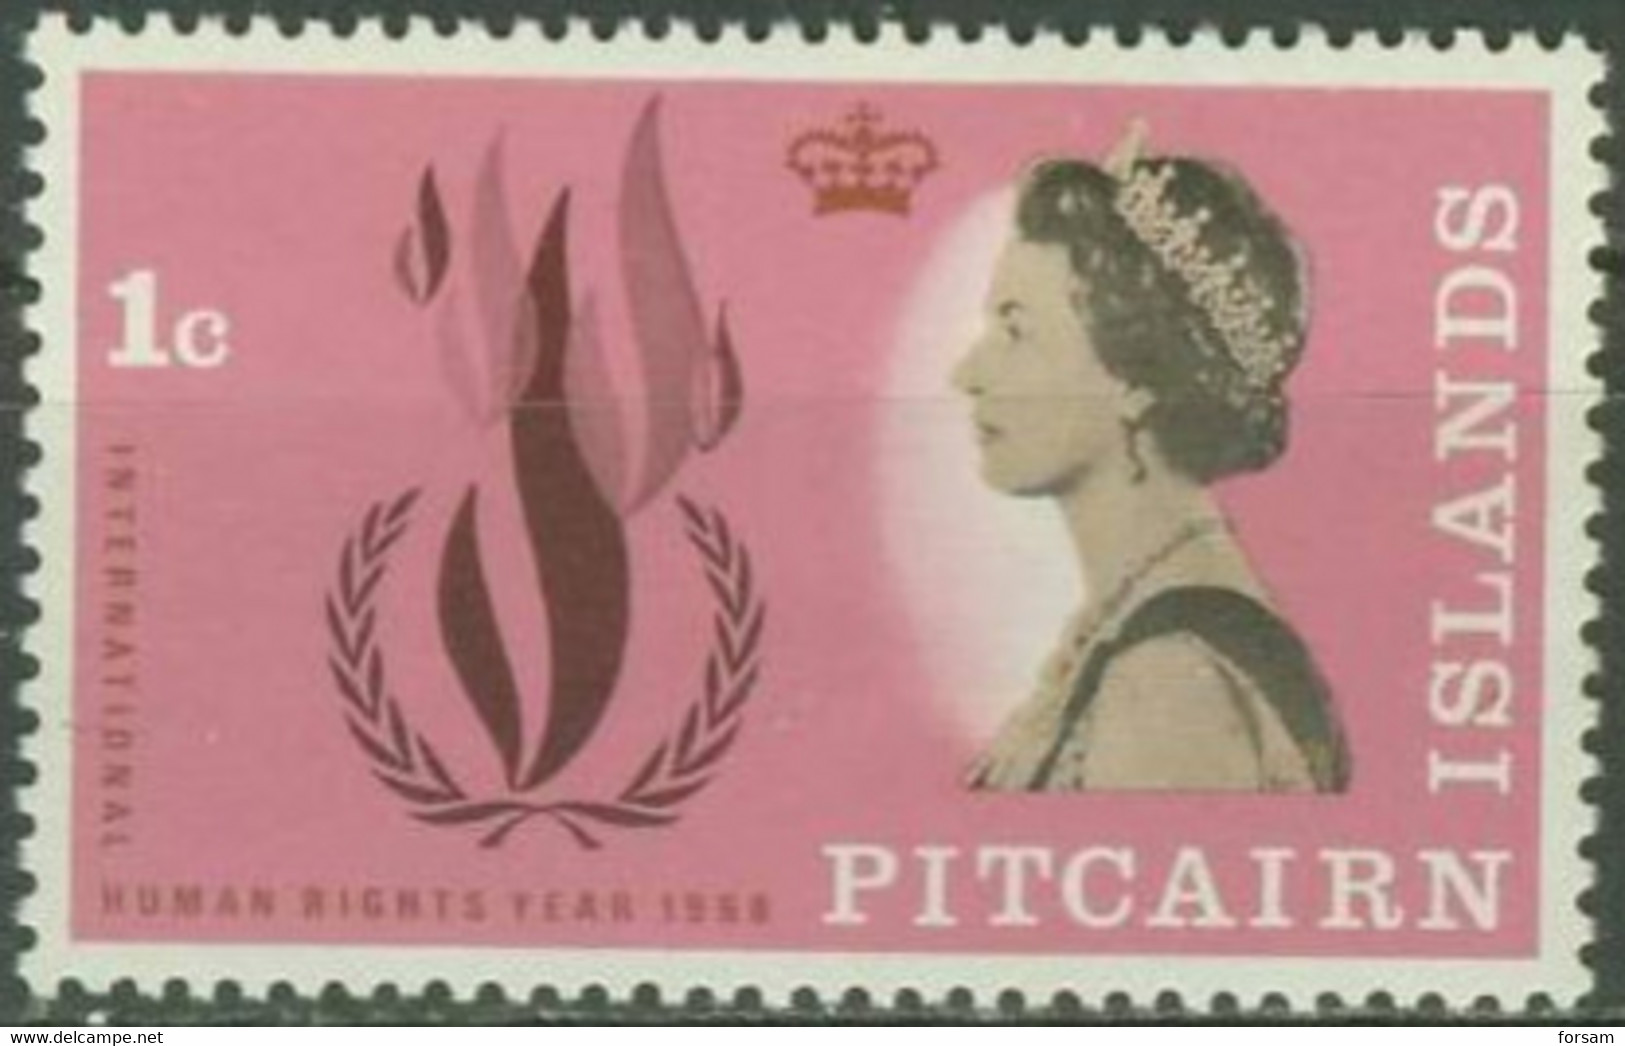 PITCAIRN ISLANDS..1968..Michel # 88...MLH. - Pitcairn